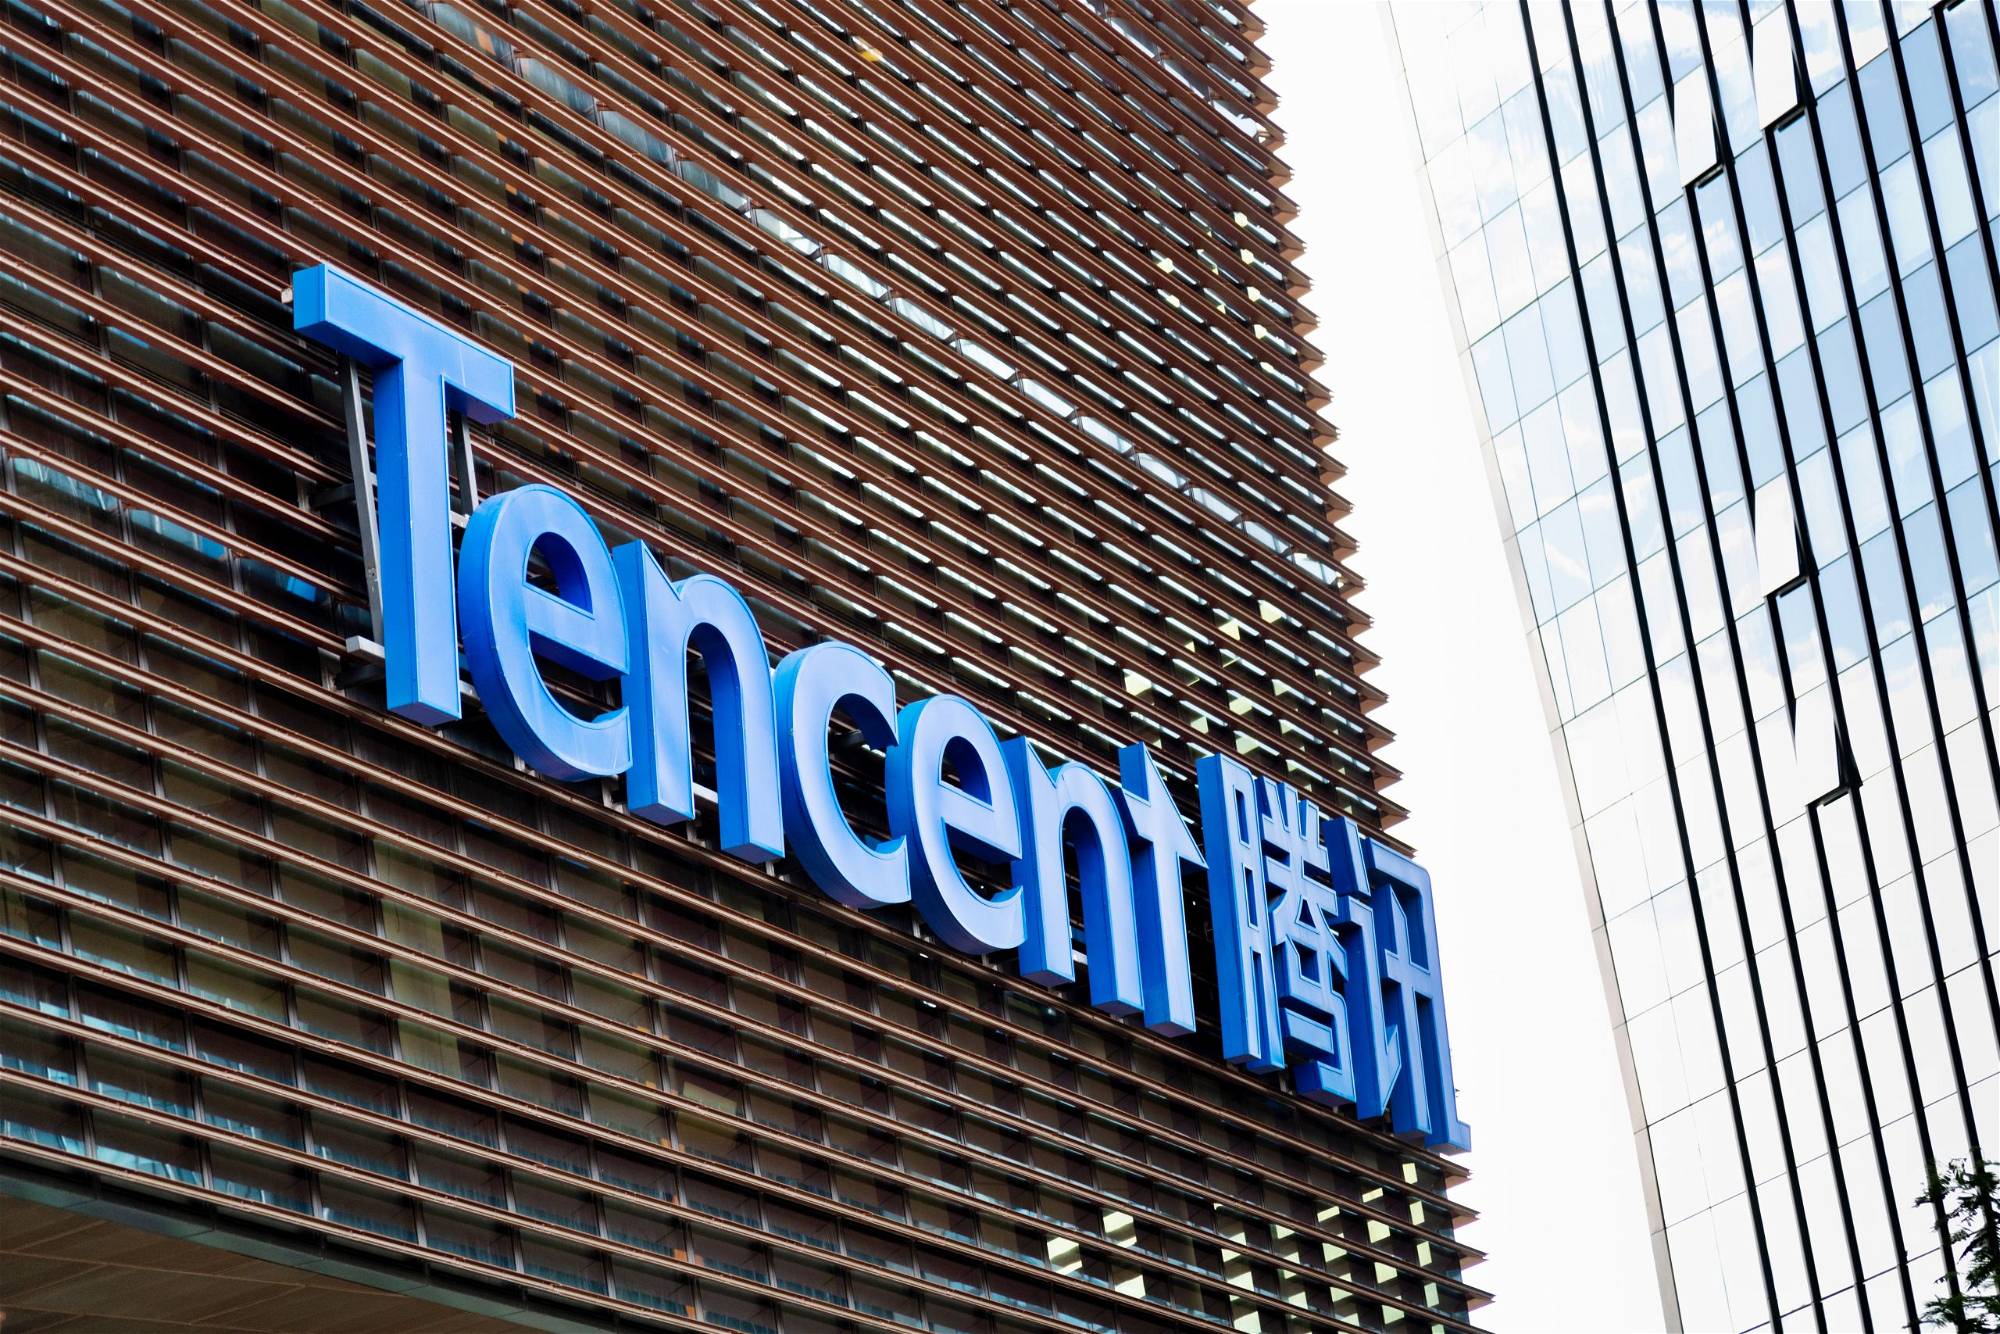 Tencent-Aktie: Sollten Sie jetzt kaufen?